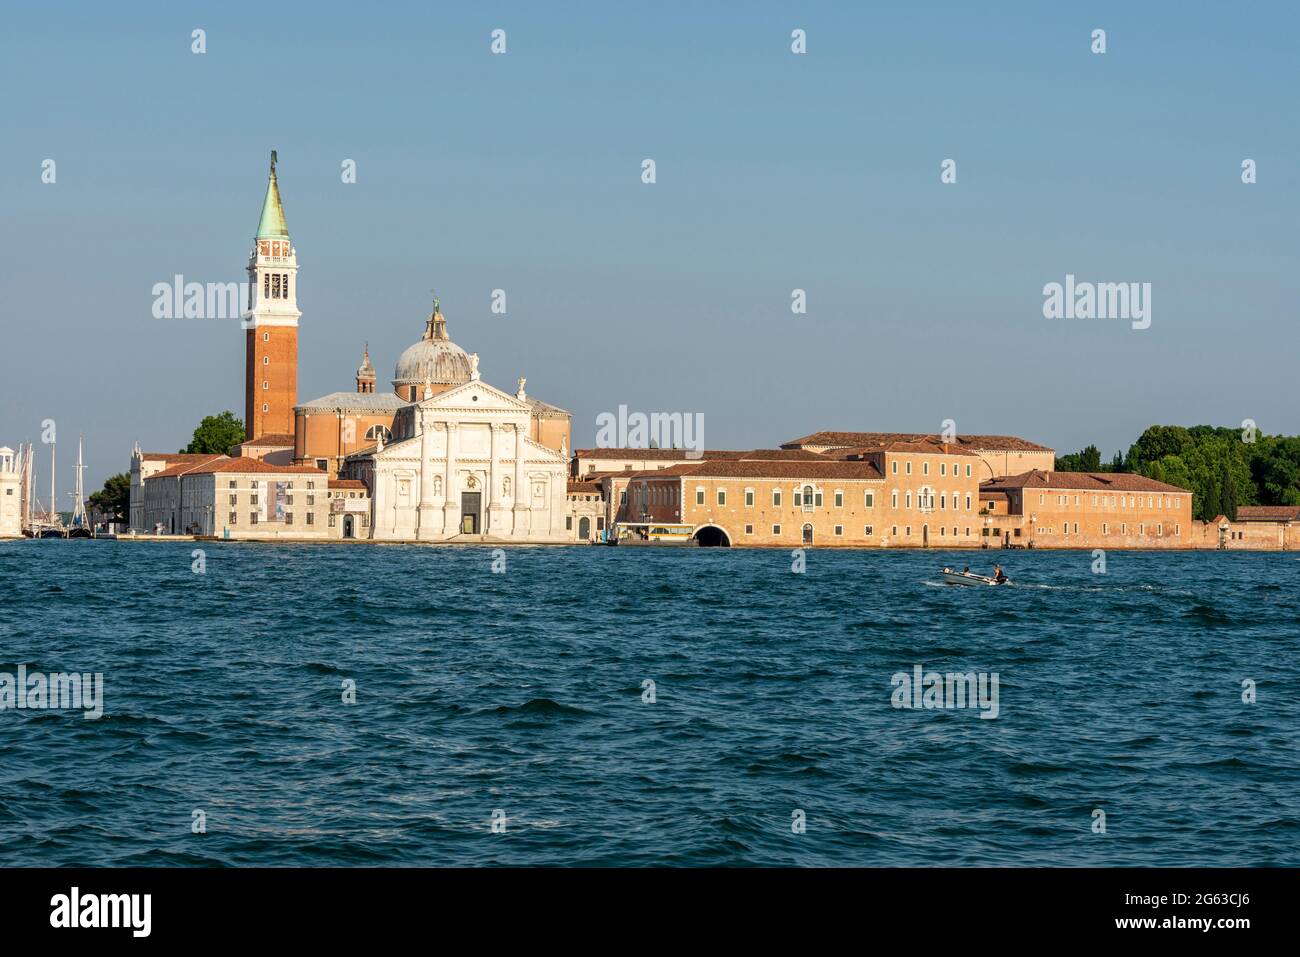 Al di là della laguna veneta si trova il campanile di San Giorgio maggiore sull'isola di San Giorgio maggiore a Venezia, nel nord Italia Foto Stock